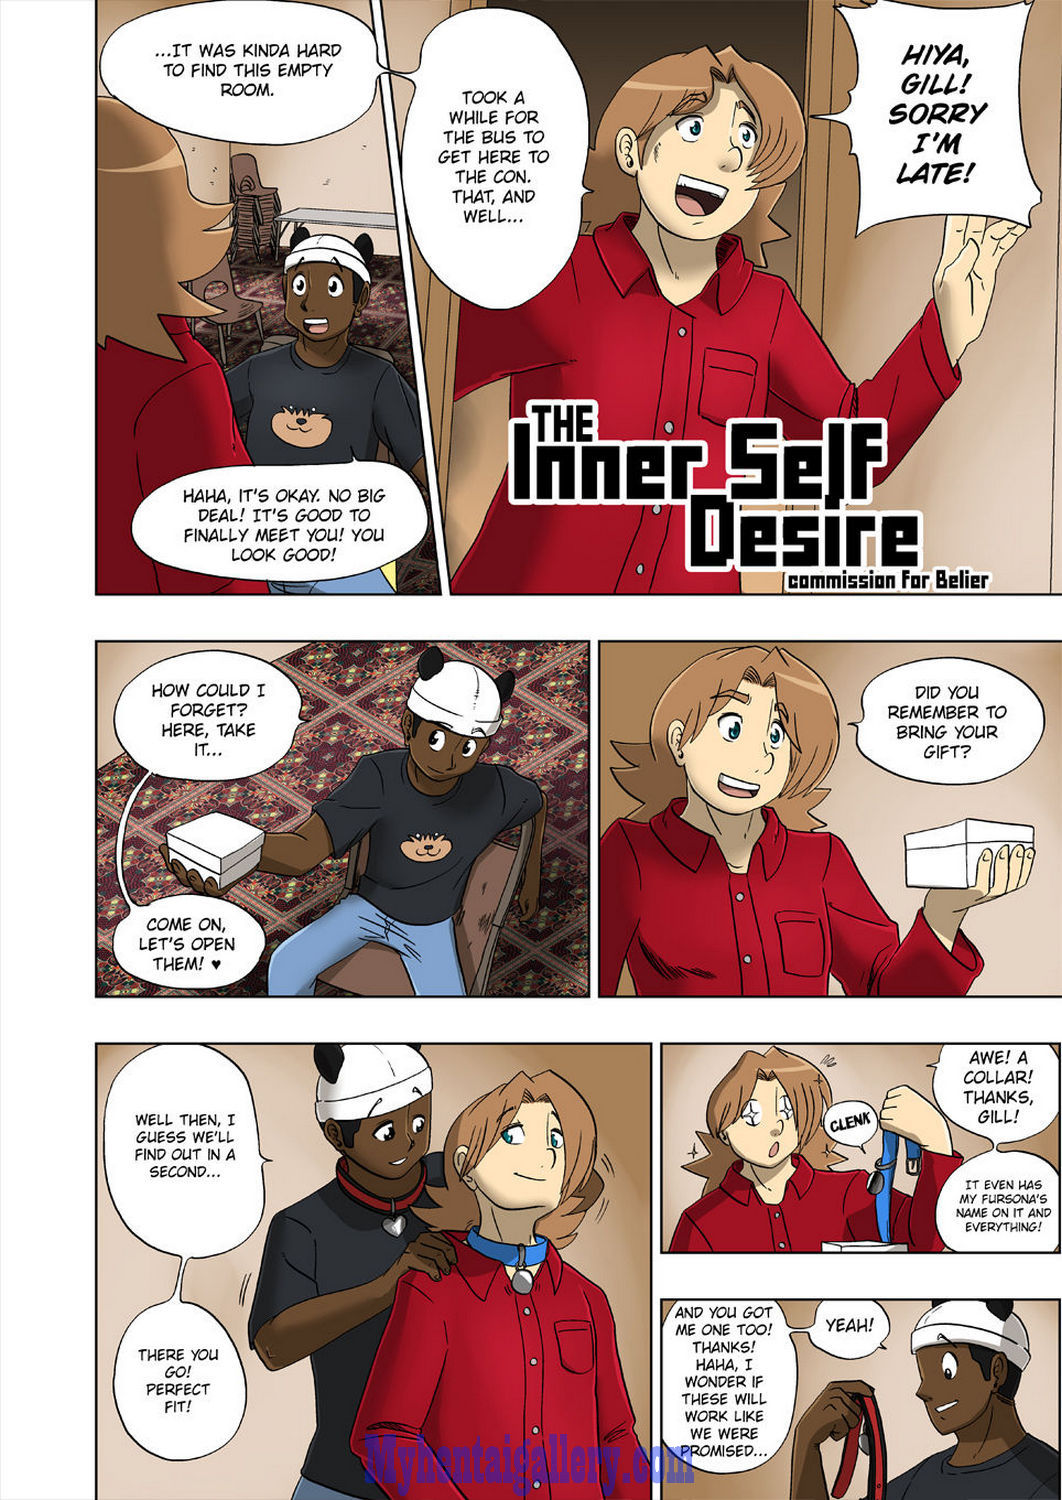 Cover The Inner Self Desire